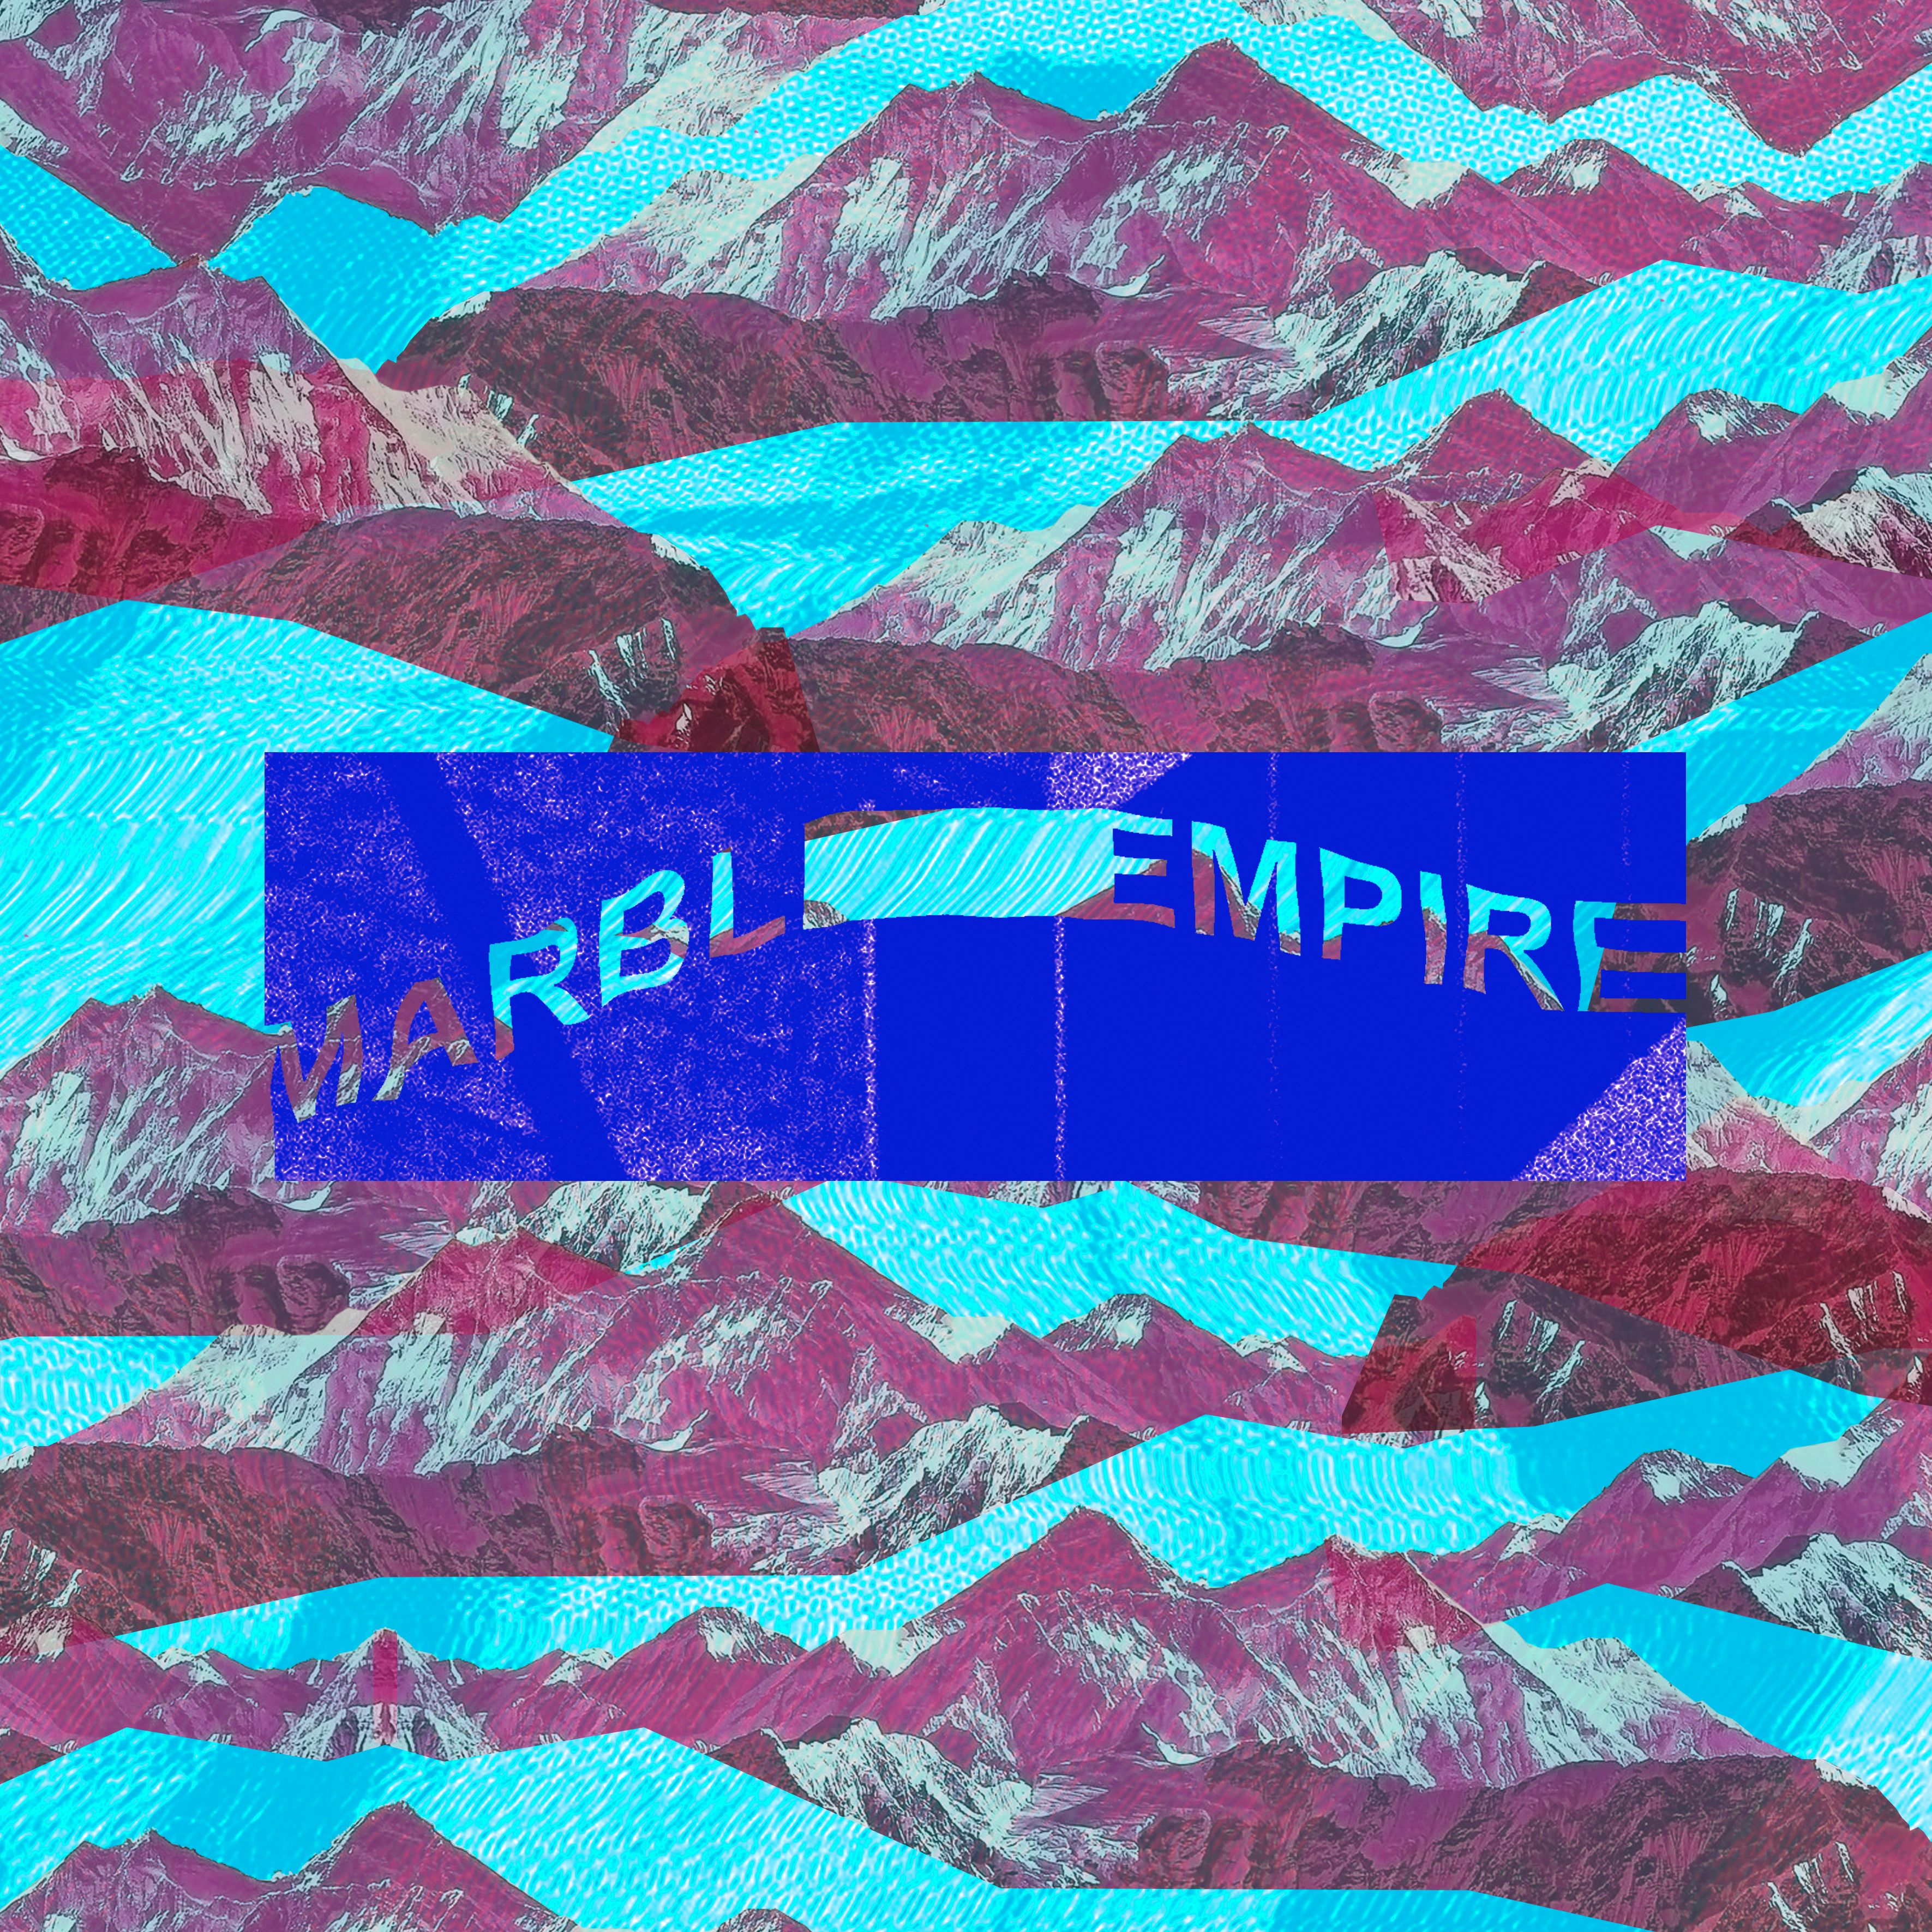 Marble Empire – “Twenty”